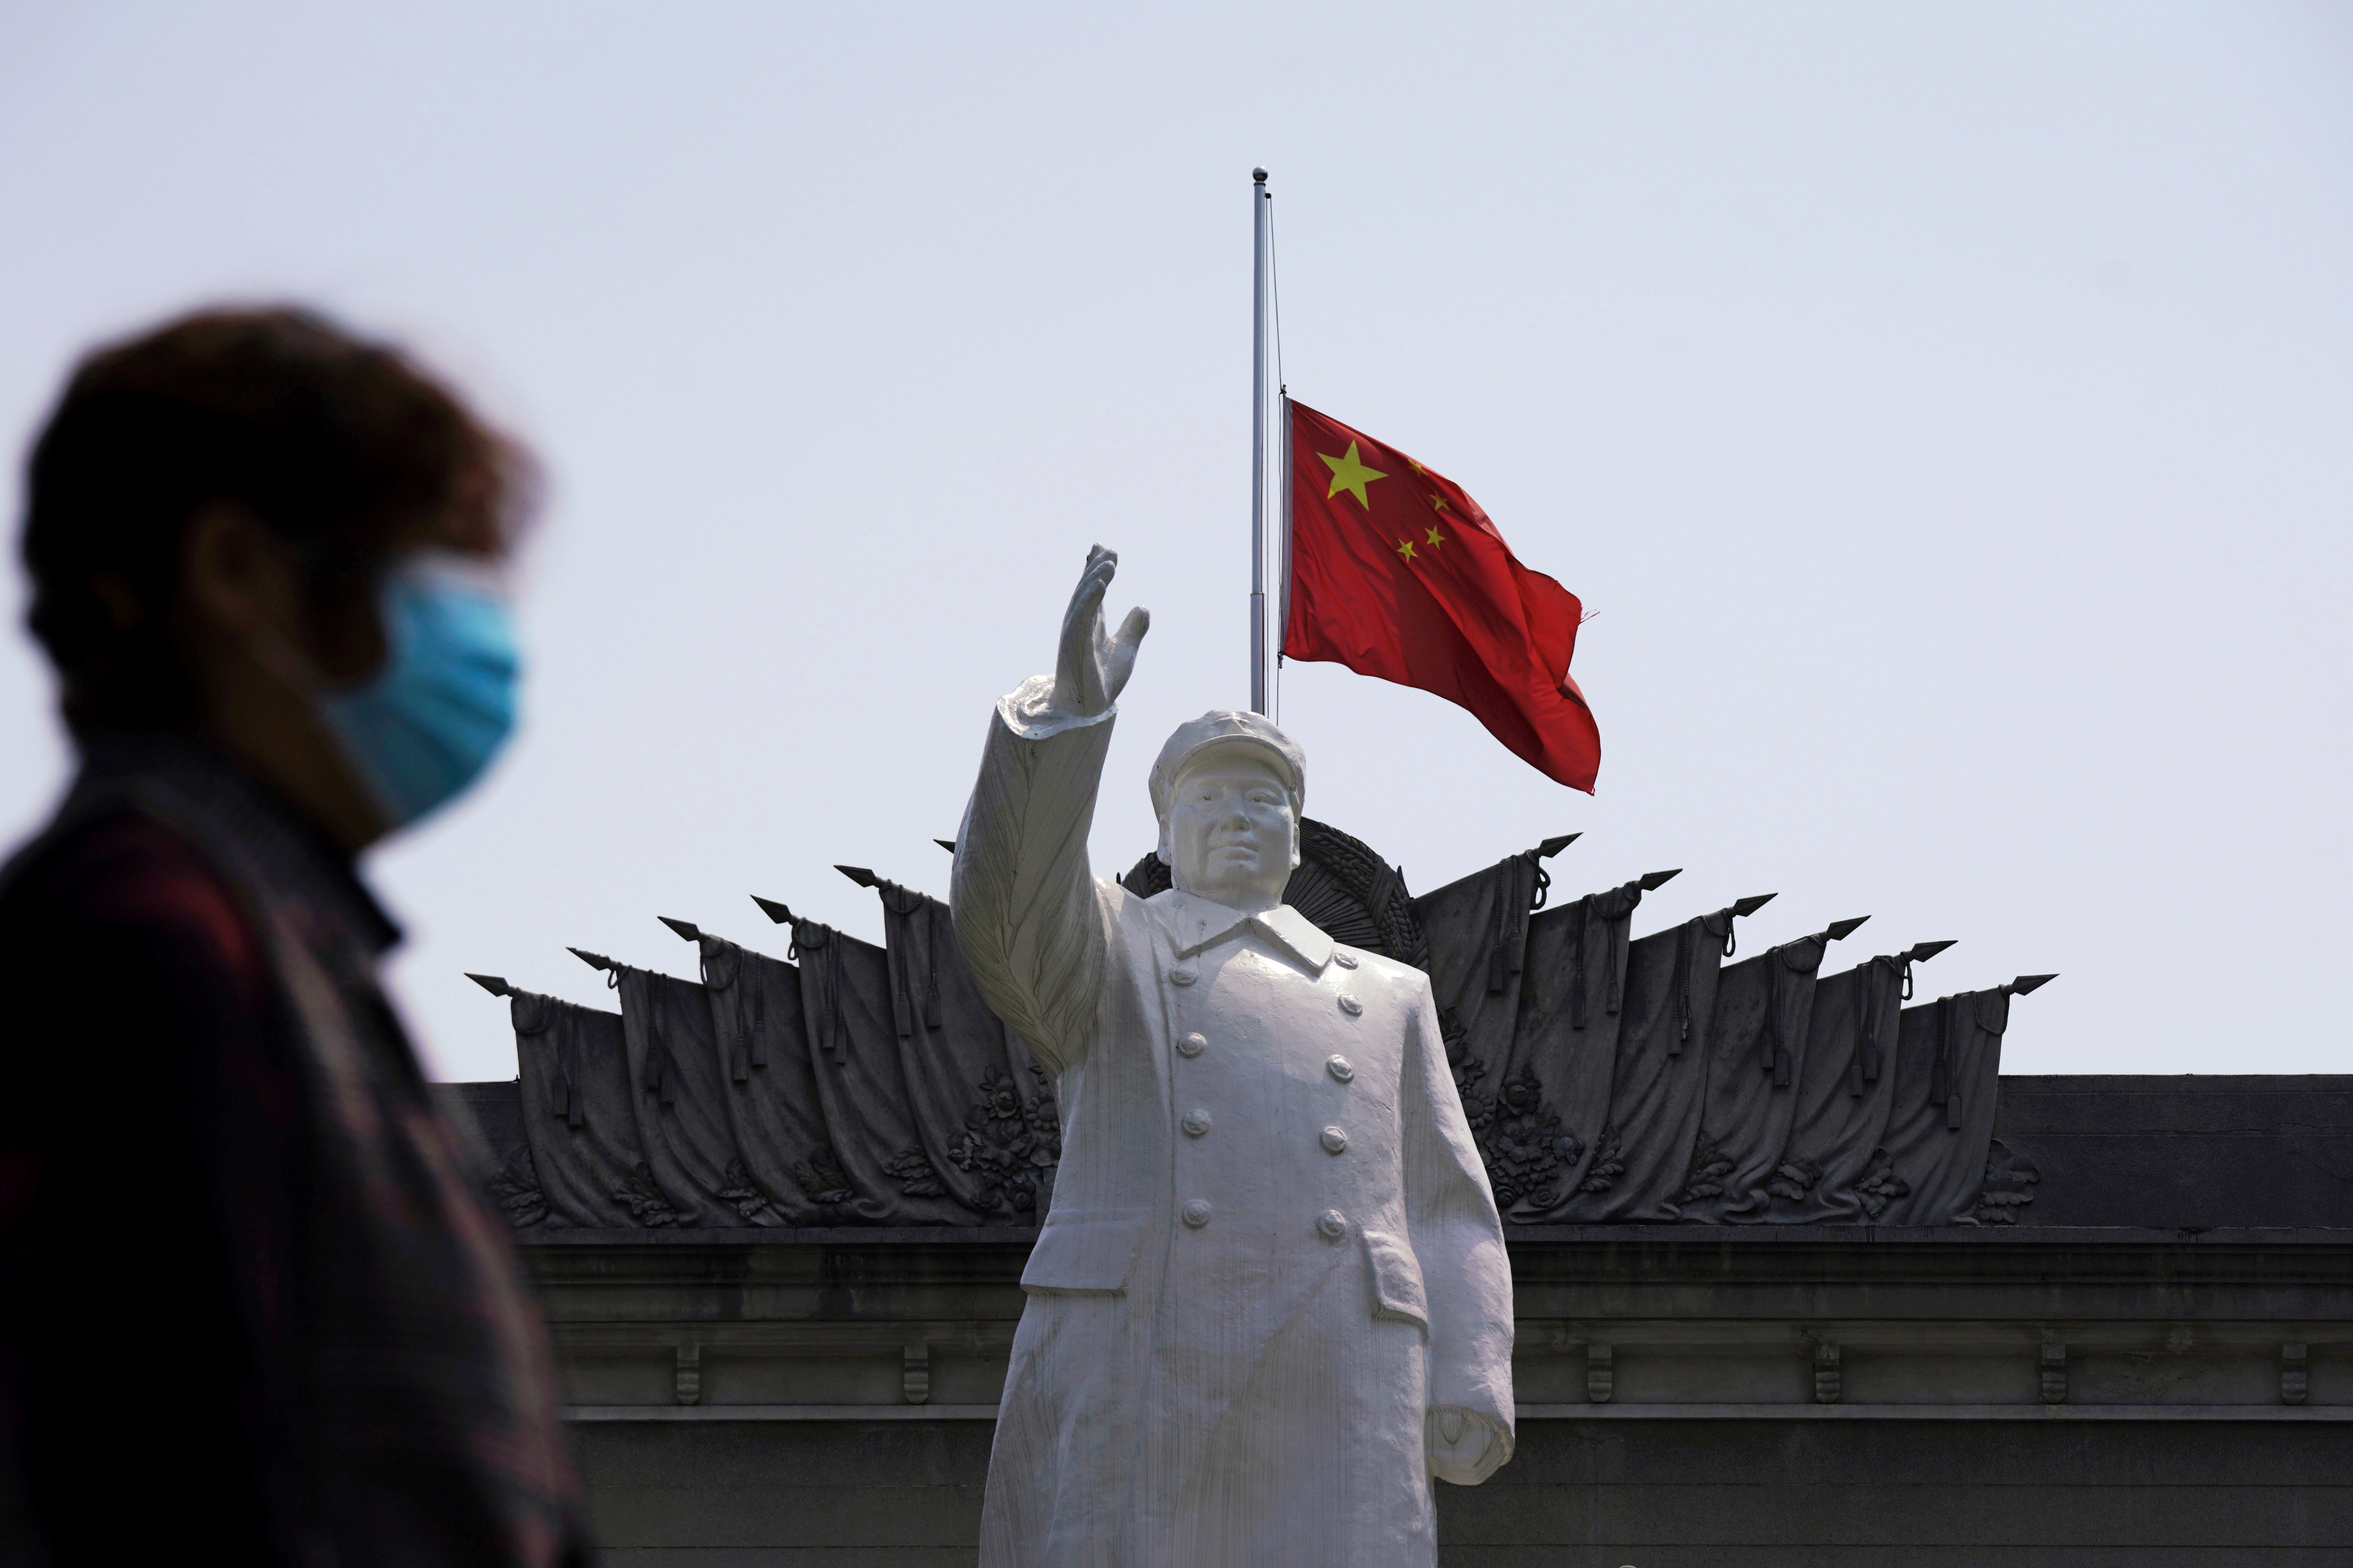 La bandera nacional china ondea a media asta detrás de una estatua del difunto dictador chino Mao Zedong en Wuhan, provincia de Hubei, el epicentro del coronavirus (Reuters)